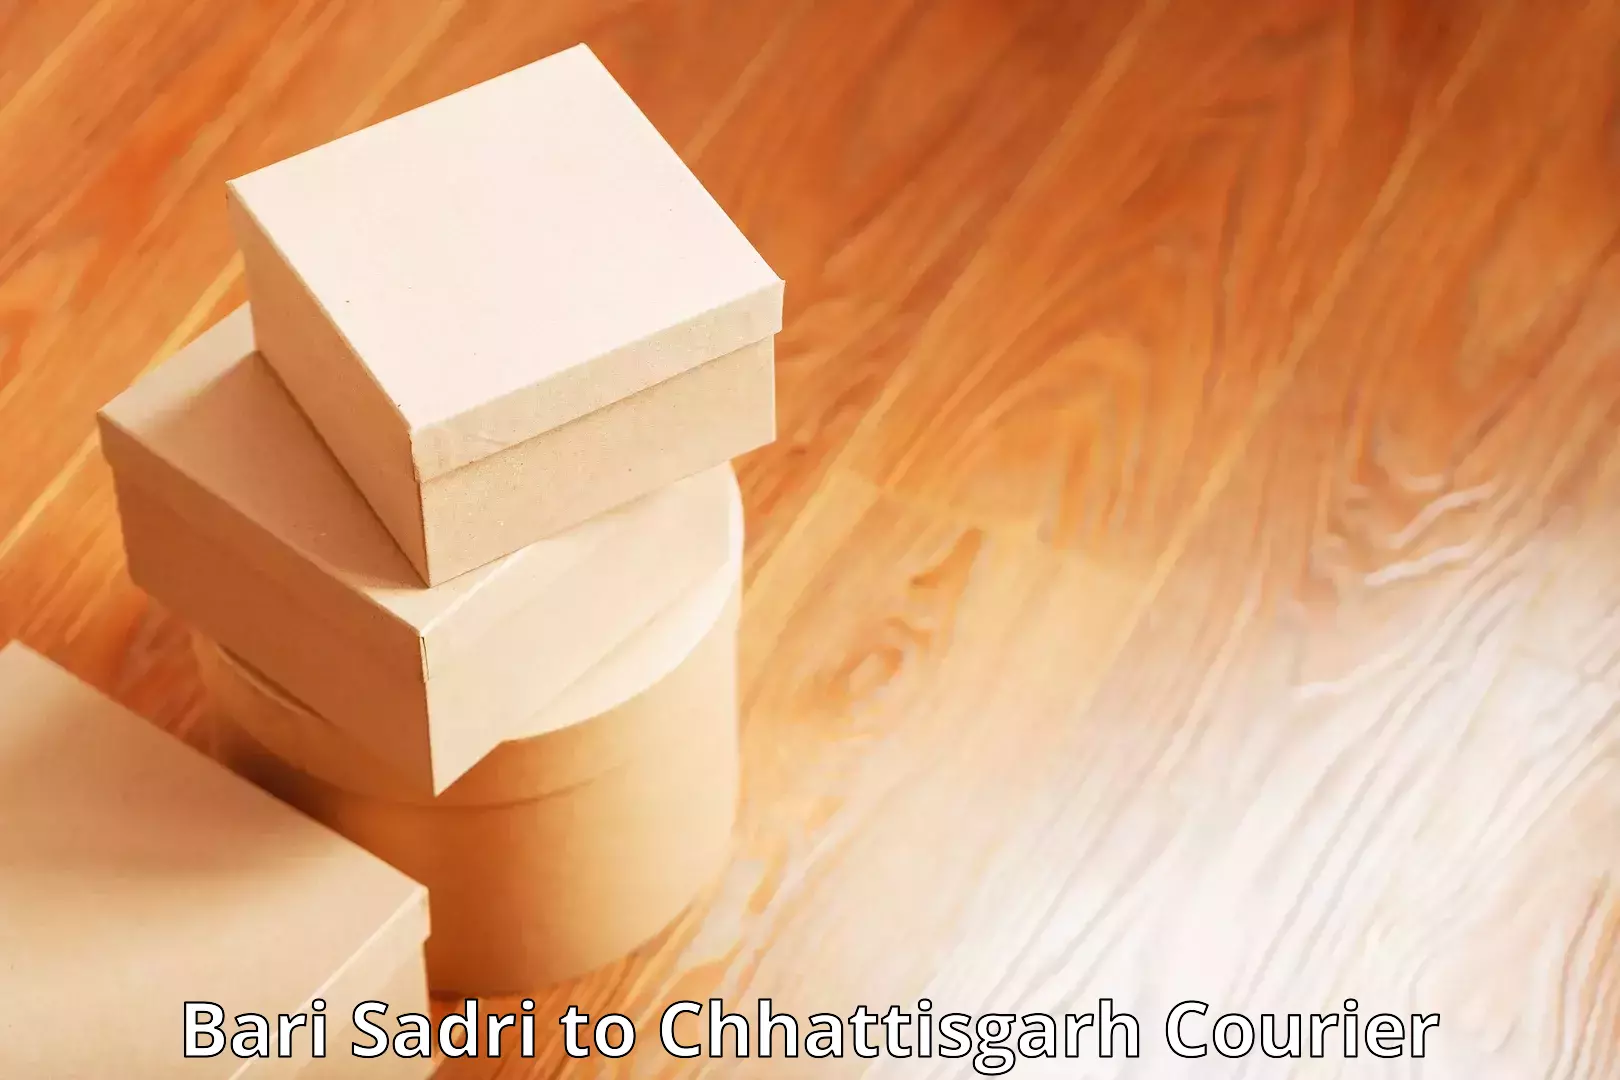 24-hour courier service Bari Sadri to Chhattisgarh